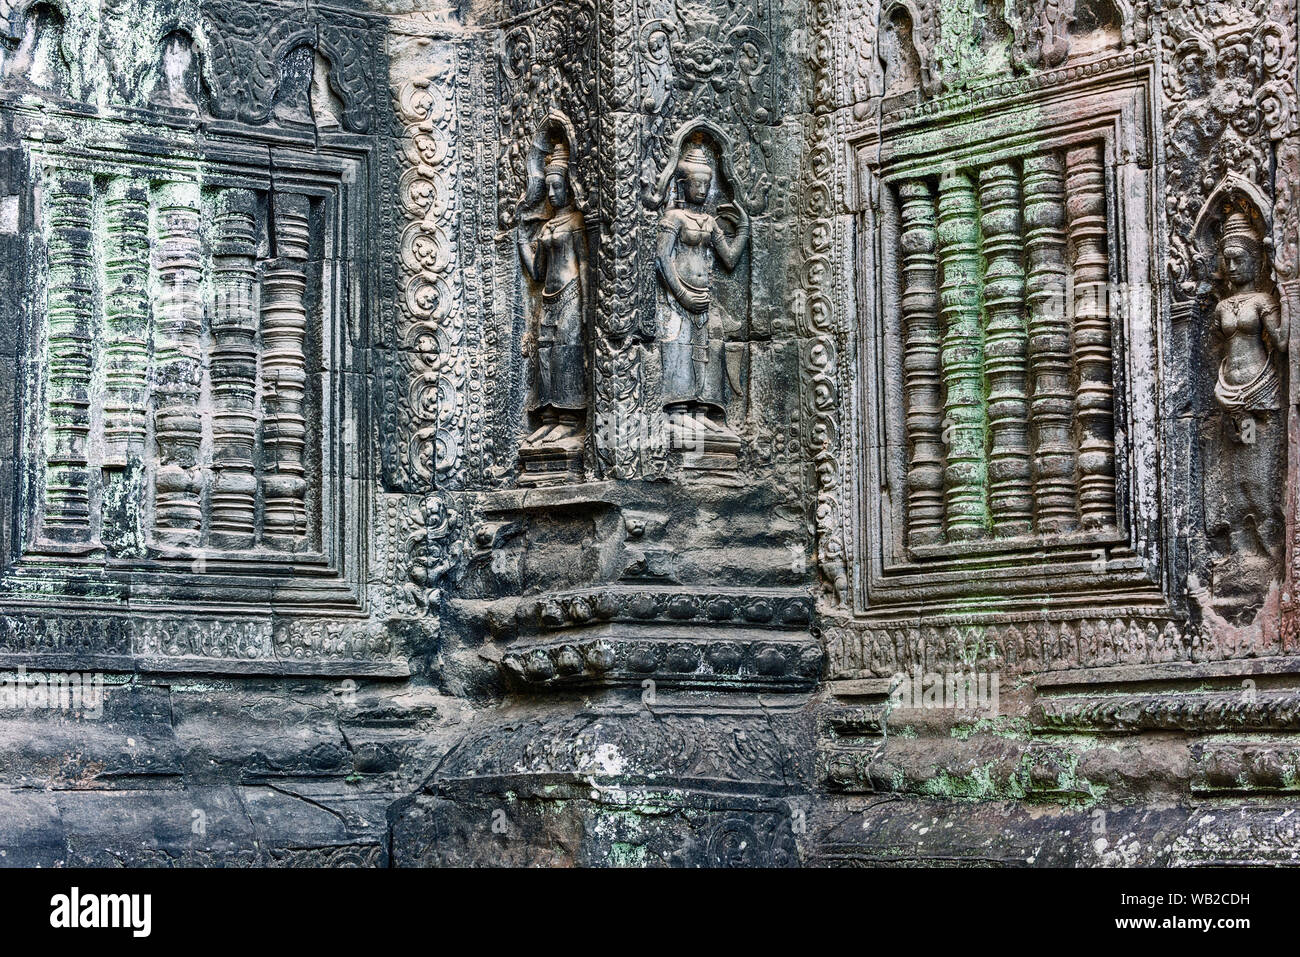 In arenaria scolpite in bassorilievo Apsaras (celesti di fanciulle) e scolpita in pietra barre finestra a Ta Prohm. Siem Reap, Cambogia. Foto Stock